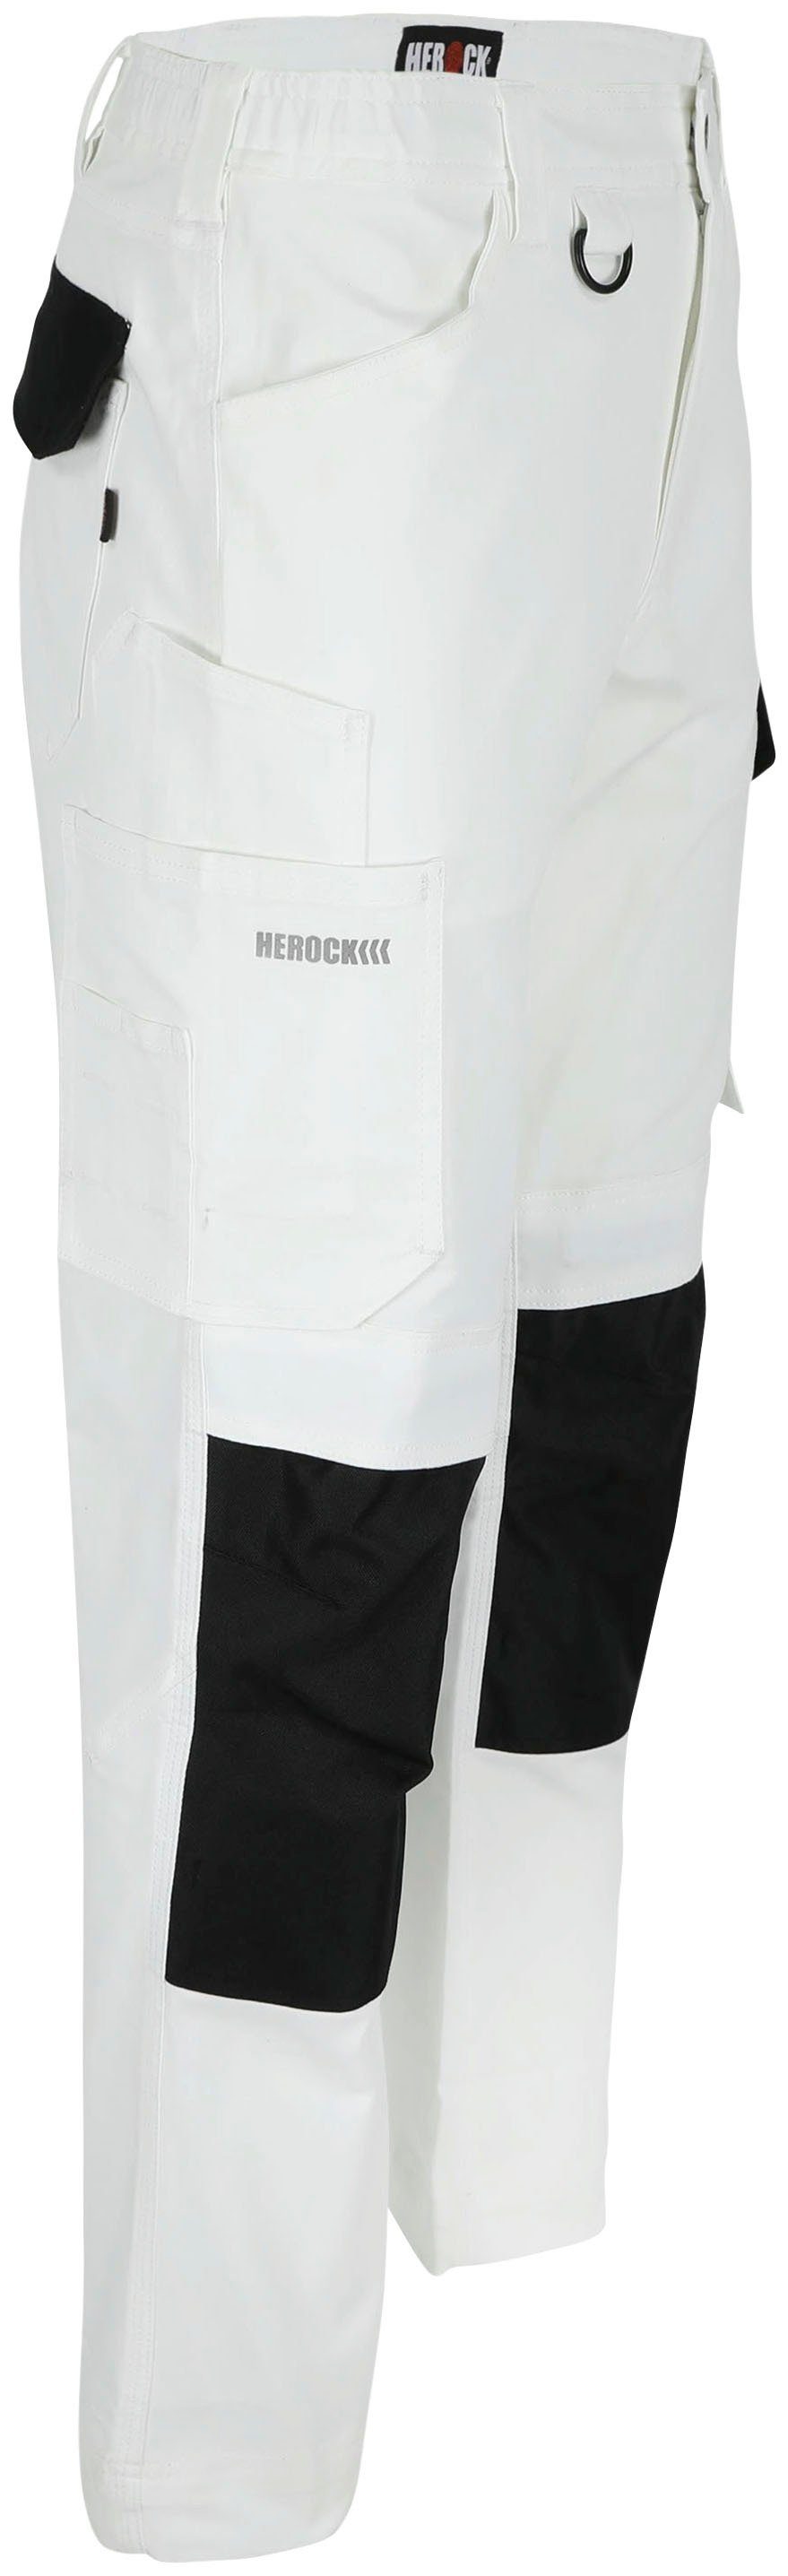 Herock Arbeitshose DERO Slim Fit wasserabweisend 2-Wege-Stretch, Multi-Pocket, Weiβ/Schwarz Passform